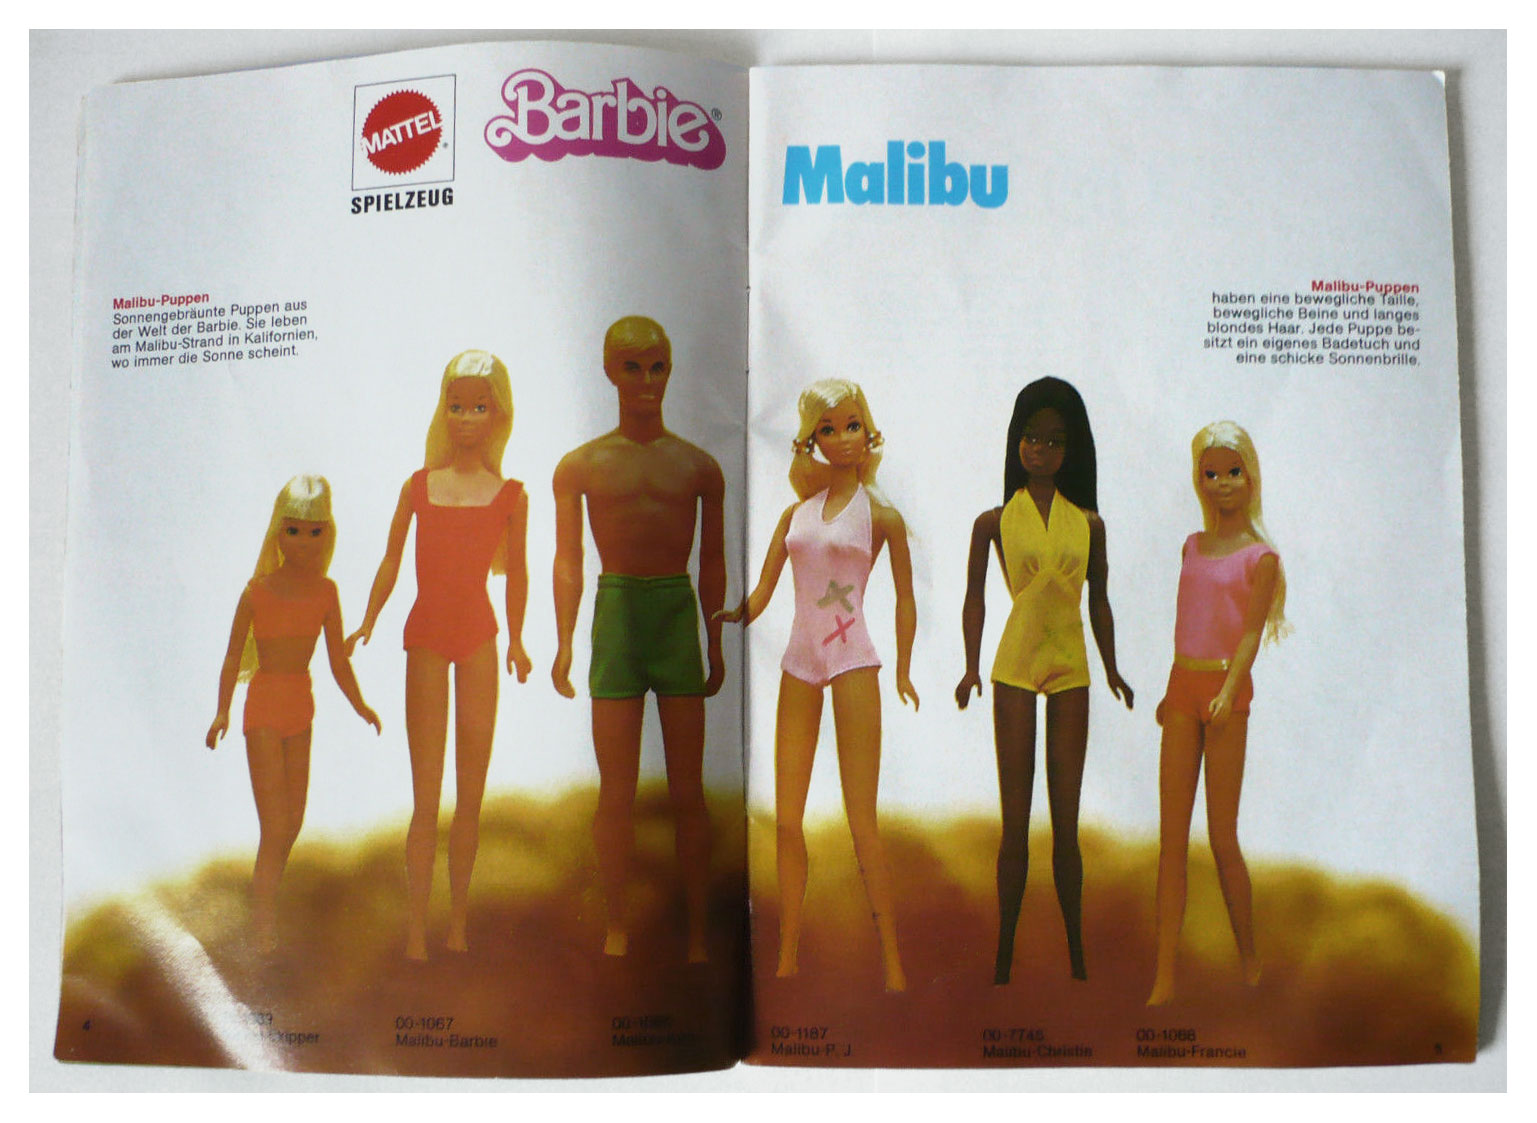 From 1976 German Barbie booklet